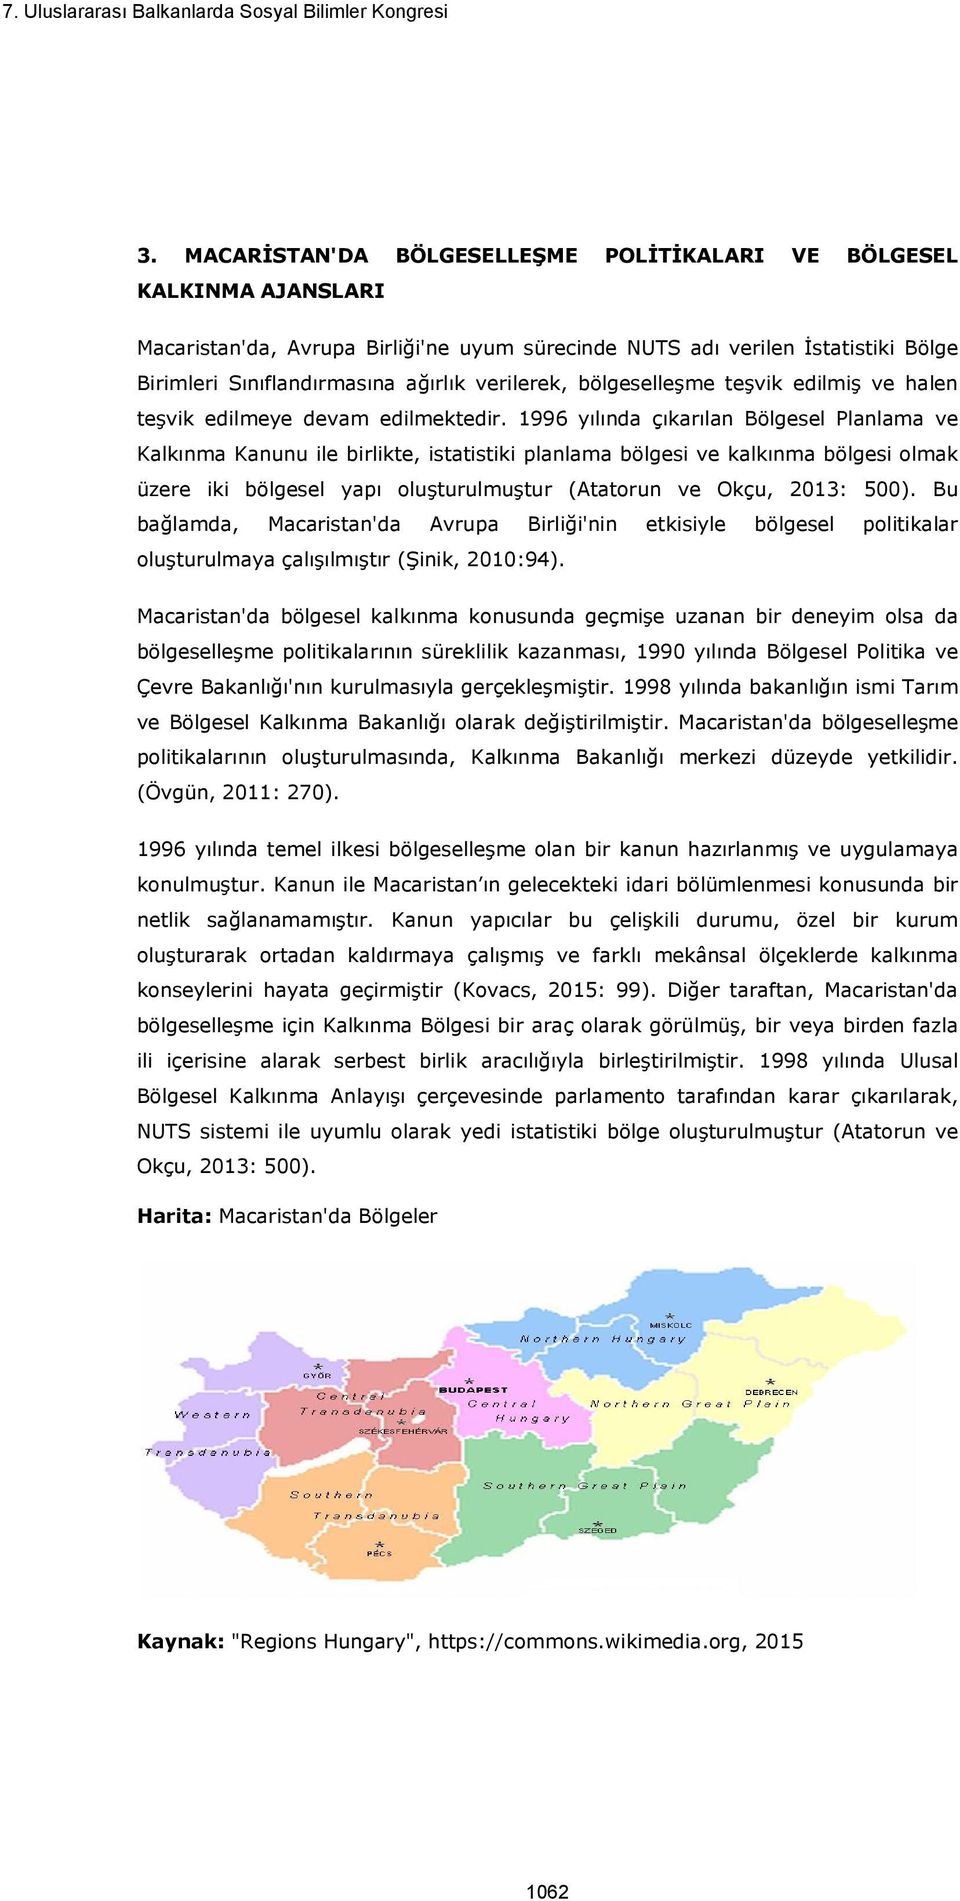 1996 yılında çıkarılan Bölgesel Planlama ve Kalkınma Kanunu ile birlikte, istatistiki planlama bölgesi ve kalkınma bölgesi olmak üzere iki bölgesel yapı oluşturulmuştur (Atatorun ve Okçu, 2013: 500).